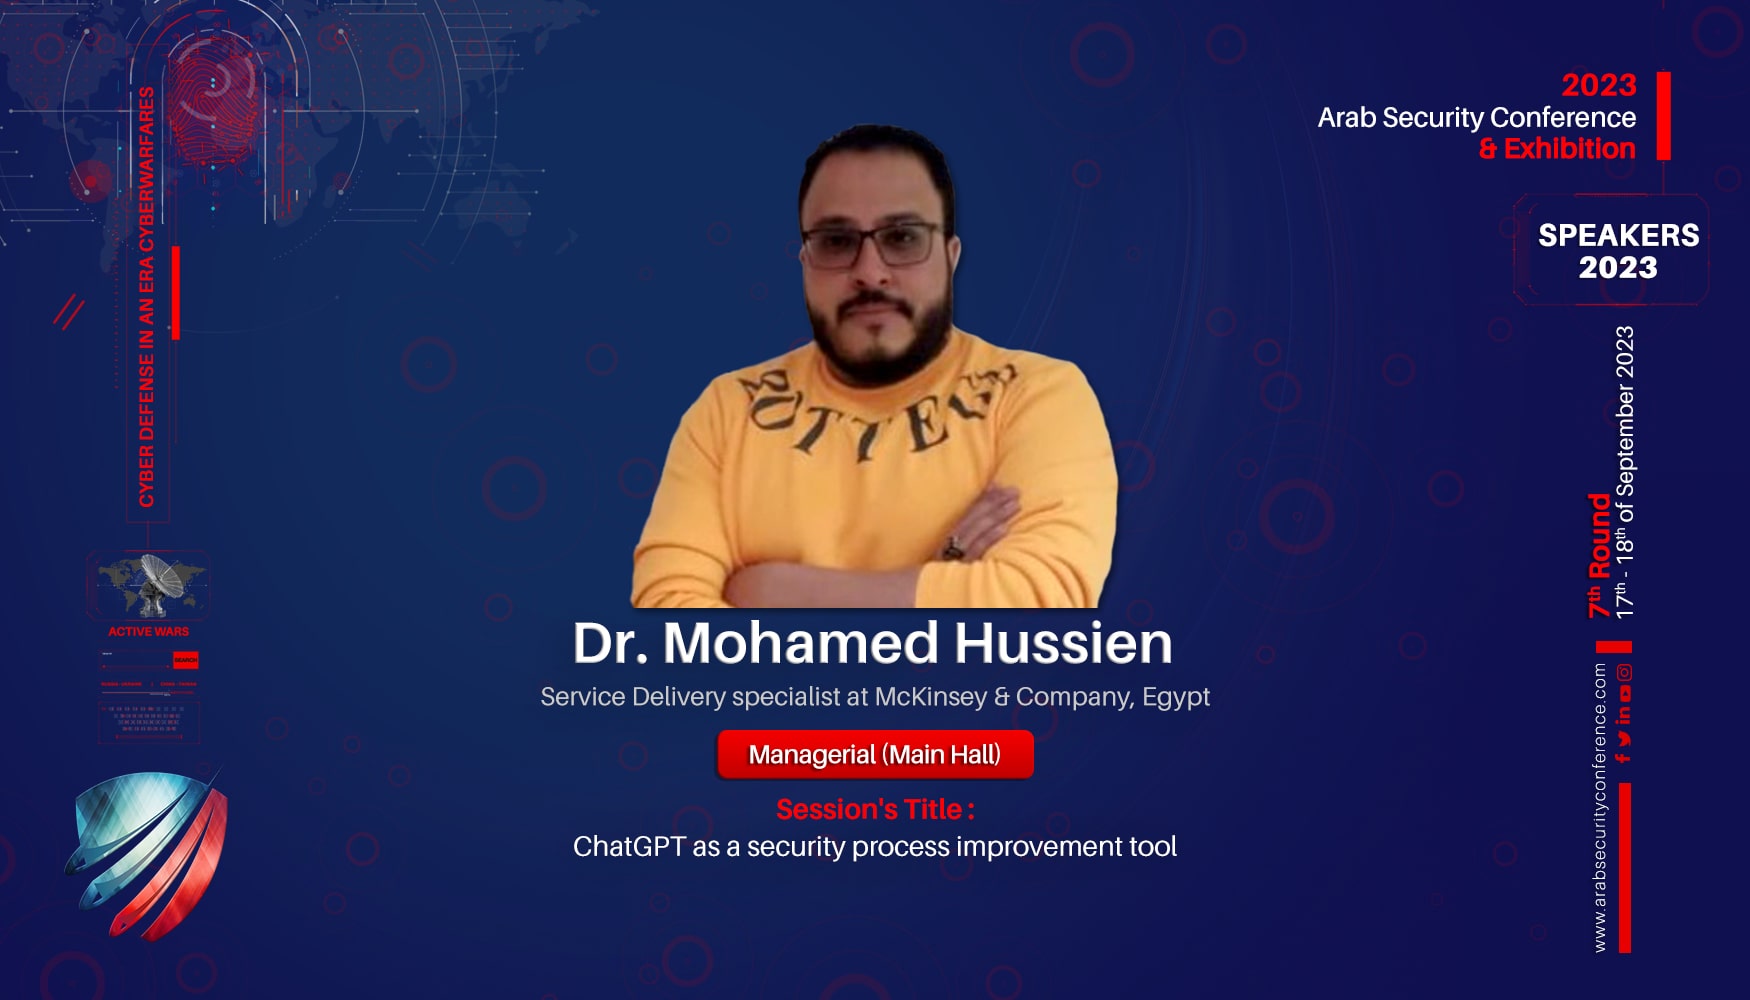 Dr. Mohamed Hussien | Arab Security Conference Speaker 2023